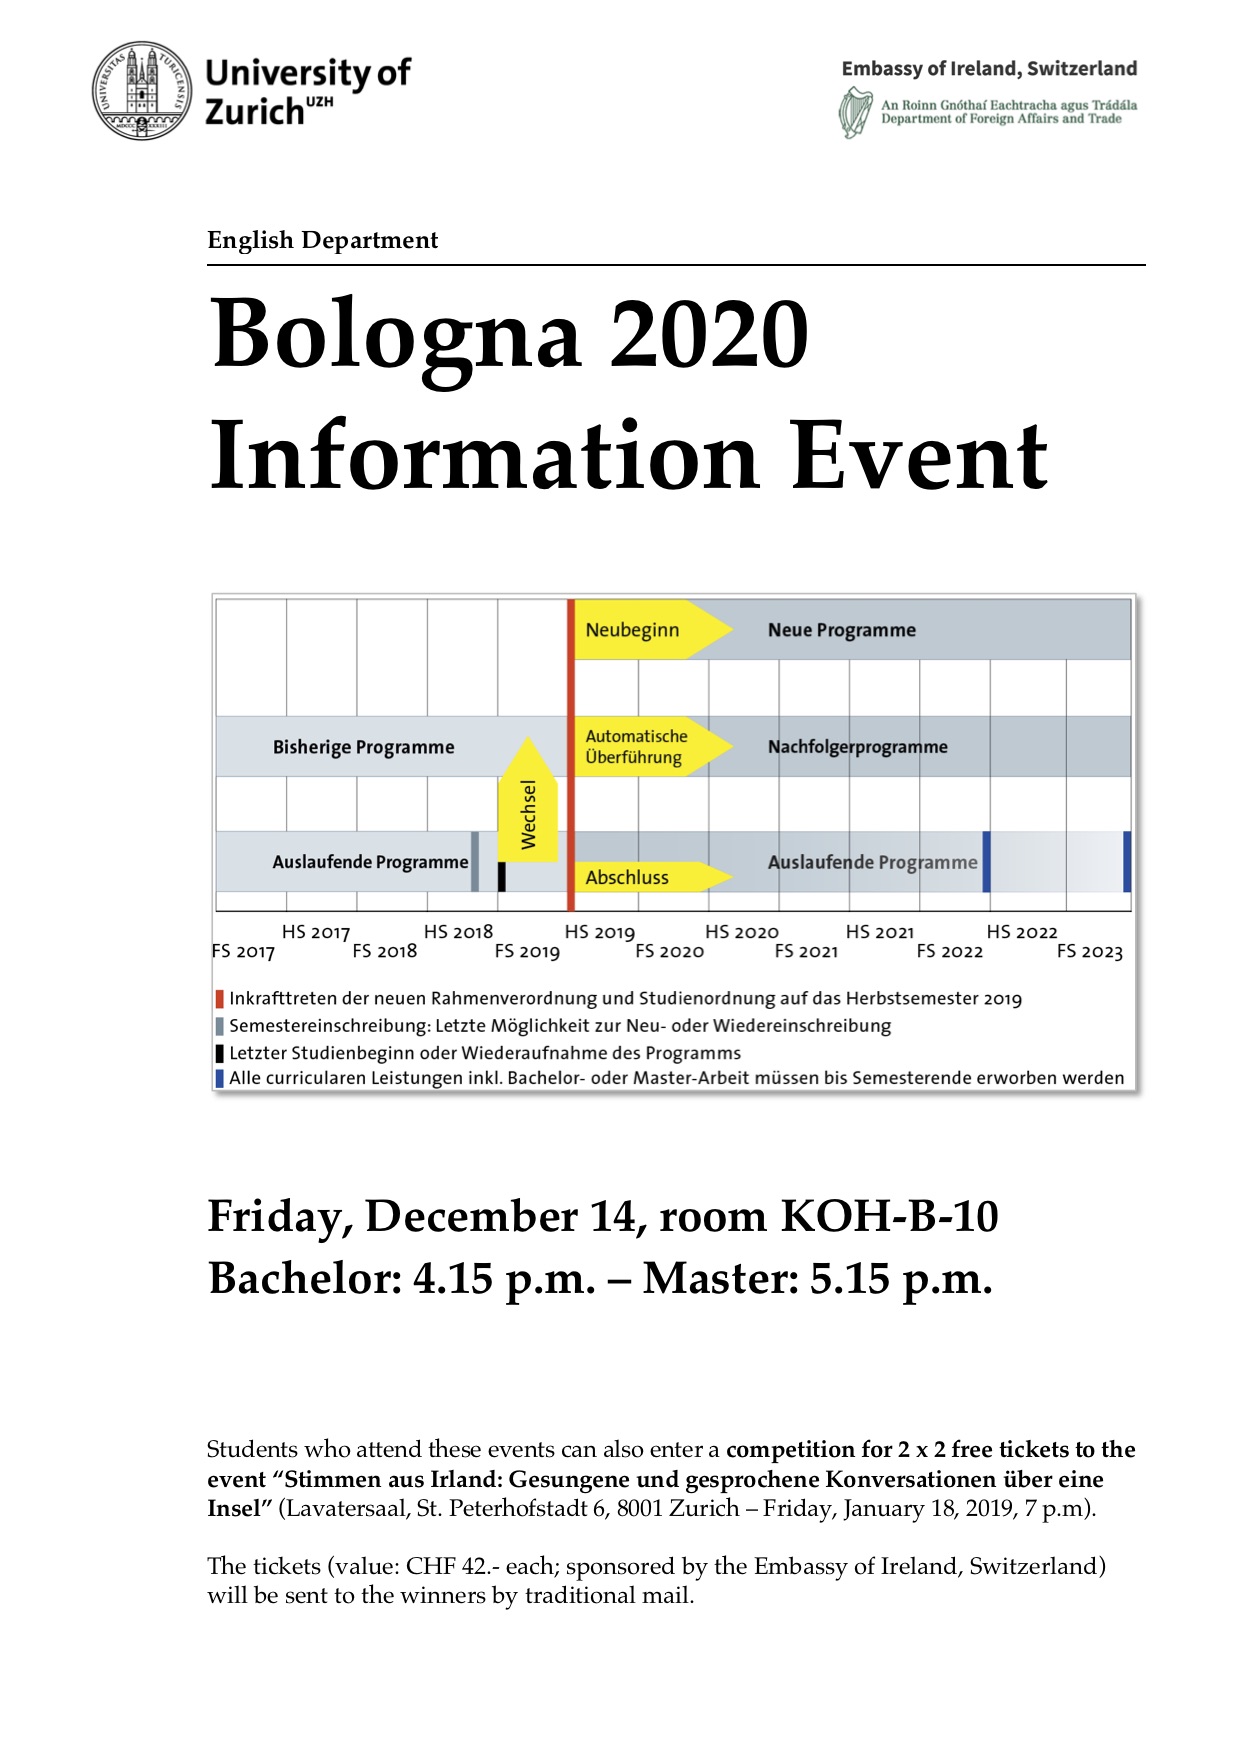 Bologna 2020 Information Event